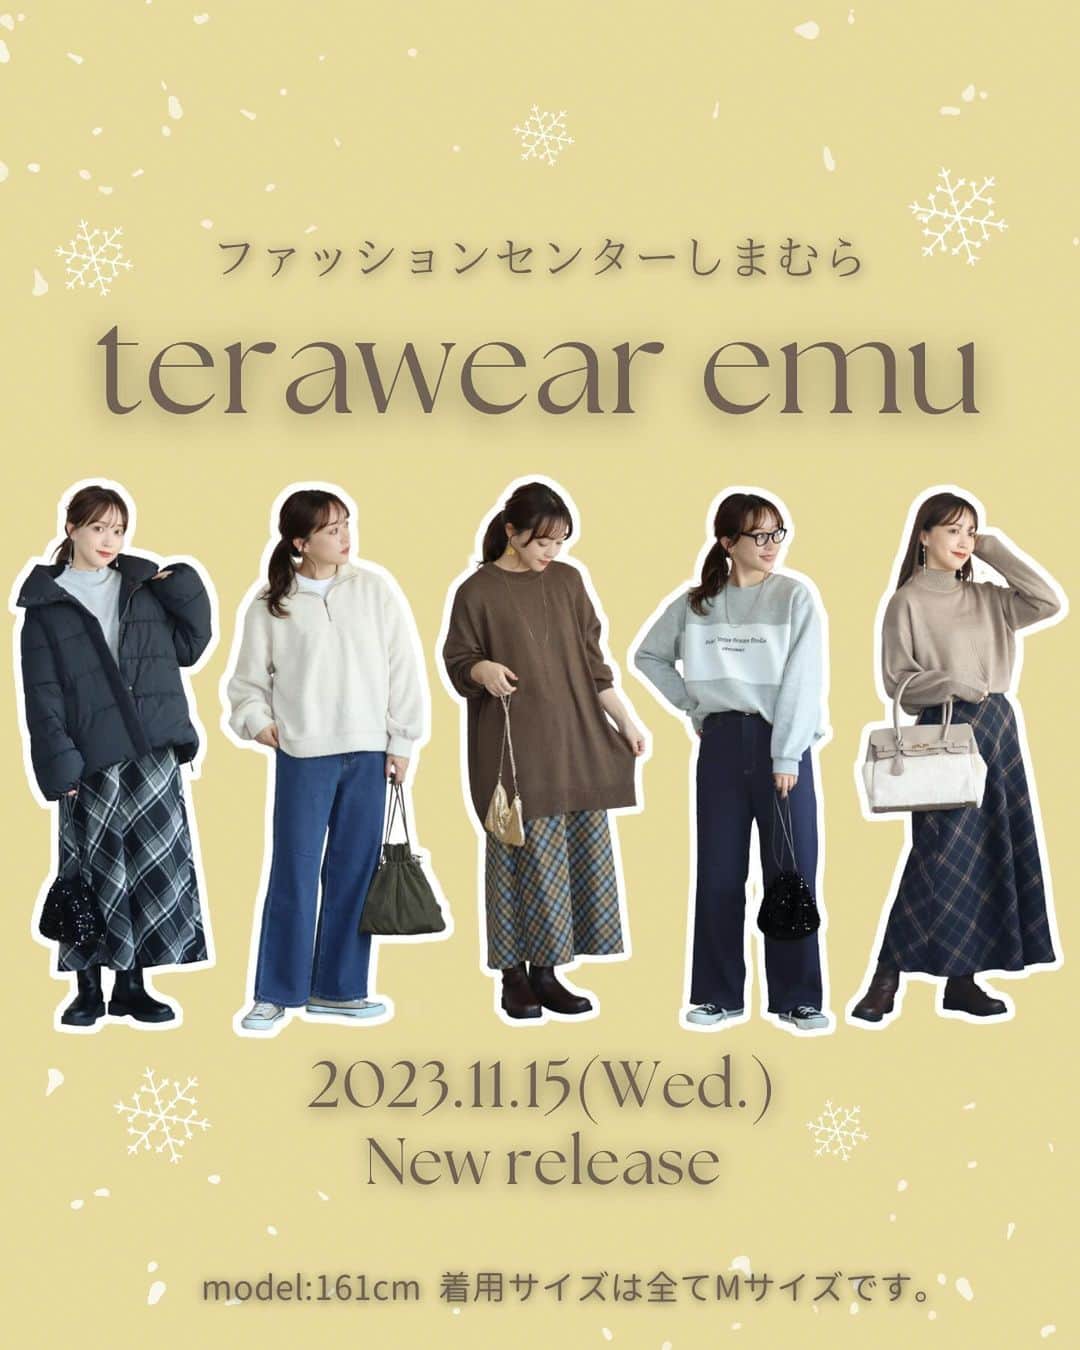 てらのインスタグラム：「みなさんこんばんは🌛☆ いつもterawear emuをご愛用いただき、 ありがとうございます💕  @grshimamura にて展開中の 私のプロデュースブランド terawear emuから 新作発売のお知らせです❤️  ………………………………………  11月15日(水)〜 しまむら全店舗にて販売開始  11月15日(水)17:00～ オンラインストア販売開始 ………………………………………   すっかり寒くなってきましたね⛄️ 冬休み、クリスマス、年末年始… これからイベントが盛りだくさん🤩🥳🎉✨ おしゃれも目一杯楽しみたいですよね🧐   そんなフォロワーさんのために 今回もたくさん新作を ご用意しました🎁✨   なんと！今回は超大特価！！🉐 アイテム数は、全8型！！ どれもお値段以上のこだわりを詰め込んだよ😉 「本当にこの値段で売っちゃっていいの？！」 と、お値段を三度見くらいしてしまいそうな アイテムに仕上がっております🥰笑 みんなの反応が楽しみだなぁ💕  01.【スタンドカラーの中綿ジャケット】 税込1,650円。 目玉と言っても過言ではない。もうこれは絶対買いです。笑 今シーズントレンドのスタンドカラー☺️詰め物の量で襟の立ち上がり方が変わるから、ここはかなりこだわって修正した！ぺちゃんとなる襟にはしたくなくて🥺長すぎない着丈でアクティブに動く日にもぴったりだし、インナーに厚手のニットを着用しても着心地がいいように程よいゆとりを持たせたよ。風が入りづらいように、袖口にシャーリングゴムを施したり、裾のドロストを絞ってシルエットを変えることができて、暖かさや風除けとしての機能面も兼ね備えてます。ここまでこだわって、税込1,650円はしまむらの奇跡。定番ブラックは人気だろうけど、私はホワイト推し🤍  02.【ケーブル柄のメロウプルオーバー】 税込550円。え？？価格どうした？？😇 これはお手に取っていただけると分かると思いますがこのお値段には到底見えないです。笑 起毛感があって、細かいケーブル編み模様が可愛くて…インナーにもなるけど1枚でも着られる、とてもしっかりした生地感。これは色違いで欲しくなる…🥺個人的にはピンク推し🩷  03.【ラガー風ロゴ刺繍プルオーバー】 税込770円。ラガー風ボーダー切り替えをポイントにゆるっとリラックス感のある丈感に仕上げたプルオーバー。トレンド感のあるシンプルなチビロゴ刺繍がアクセント🪡ベーシックな配色にもこだわった！  04.【センターシームと長めの裾リブがポイントのニットプルオーバー】 税込990円。センターシームと長めの裾リブがすっきりとした印象を与えてくれるハイネックニットプルオーバー。 サイドスリットも長めに入れたので、パンツやスカートなど幅広いボトムに合わせられます。着回し抜群のニットがこの価格🥺👏私的に冬に明るめグリーン、オススメです。  05.【ボア素材のハーフジッププルオーバー】 税込770円。程よいもこもこ感のボア素材を使用した、今期もトレンド継続中のハーフジップデザイン☺️着膨れしがちなボアアイテムも、コンパクトめな程よいサイズ感なのでチャレンジしやすいと思います！暖かさとトレンド感を兼ね備えています⛄️🩵  06.【起毛素材のチェックスカート】 税込1,320円。毛足のある起毛素材が冬を感じさせるチェックスカート！どの色も着回しやすい配色👏シンプルなニットに合わせるだけで上品コーデになるから、クリスマスや年末年始の帰省などにも◎いろんなトップスに合わせやすいよう控えめなフレアシルエットにしたよ！この価格でも、右脇ポケット付き、裏地つきです👏あとウエストの後ろはゴム仕様。  07.【裏起毛ストレッチデニムのバギーパンツ】 税込1,320円。冬の朝にはくデニムって、ひんやりしてて寒いよね…🥶裏起毛デニムなら、はいた瞬間からあったかい😮‍💨❤️裏起毛といっても、もこもこしているわけではないので美シルエットに変わりはありません！ストレッチが効いているし、ウエストの後ろはゴムだから楽ちん✊  08.【ゆるっとしたシルエットなのに着膨れしないニットプルオーバー】 税込990円。最初はこの素材でワンピをつくるつもりだったんだけど、お値段との兼ね合いもあって理想の丈感にするのは難しかったから、思い切ってチュニックに路線変更したらこれが大正解で…🥺✨結果めちゃめちゃ着まわしのきくニットになった！程よく落ち感のある素材だからオーバーシルエットでも着膨れ知らず。アウターの中に分厚いニット着たくない人にとってもおすすめ。  【インスタライブは11/14(火)12:00〜】 全8型ご紹介させてください☺️！ ご質問にもお答えしていきますので ぜひリアタイしてください〜🎤  また今月もお知らせができて嬉しい☺️ みんなのおかげだよ。 いつも本当にありがとう💐  #PR #しまパト#しまむら#しまむらパトロール#しまむらコーデ#ファッションセンターしまむら#プチプラ#プチプラコーデ#ママコーデ#きっと見つかる#みんなワクワク#terawearemu#冬コーデ」